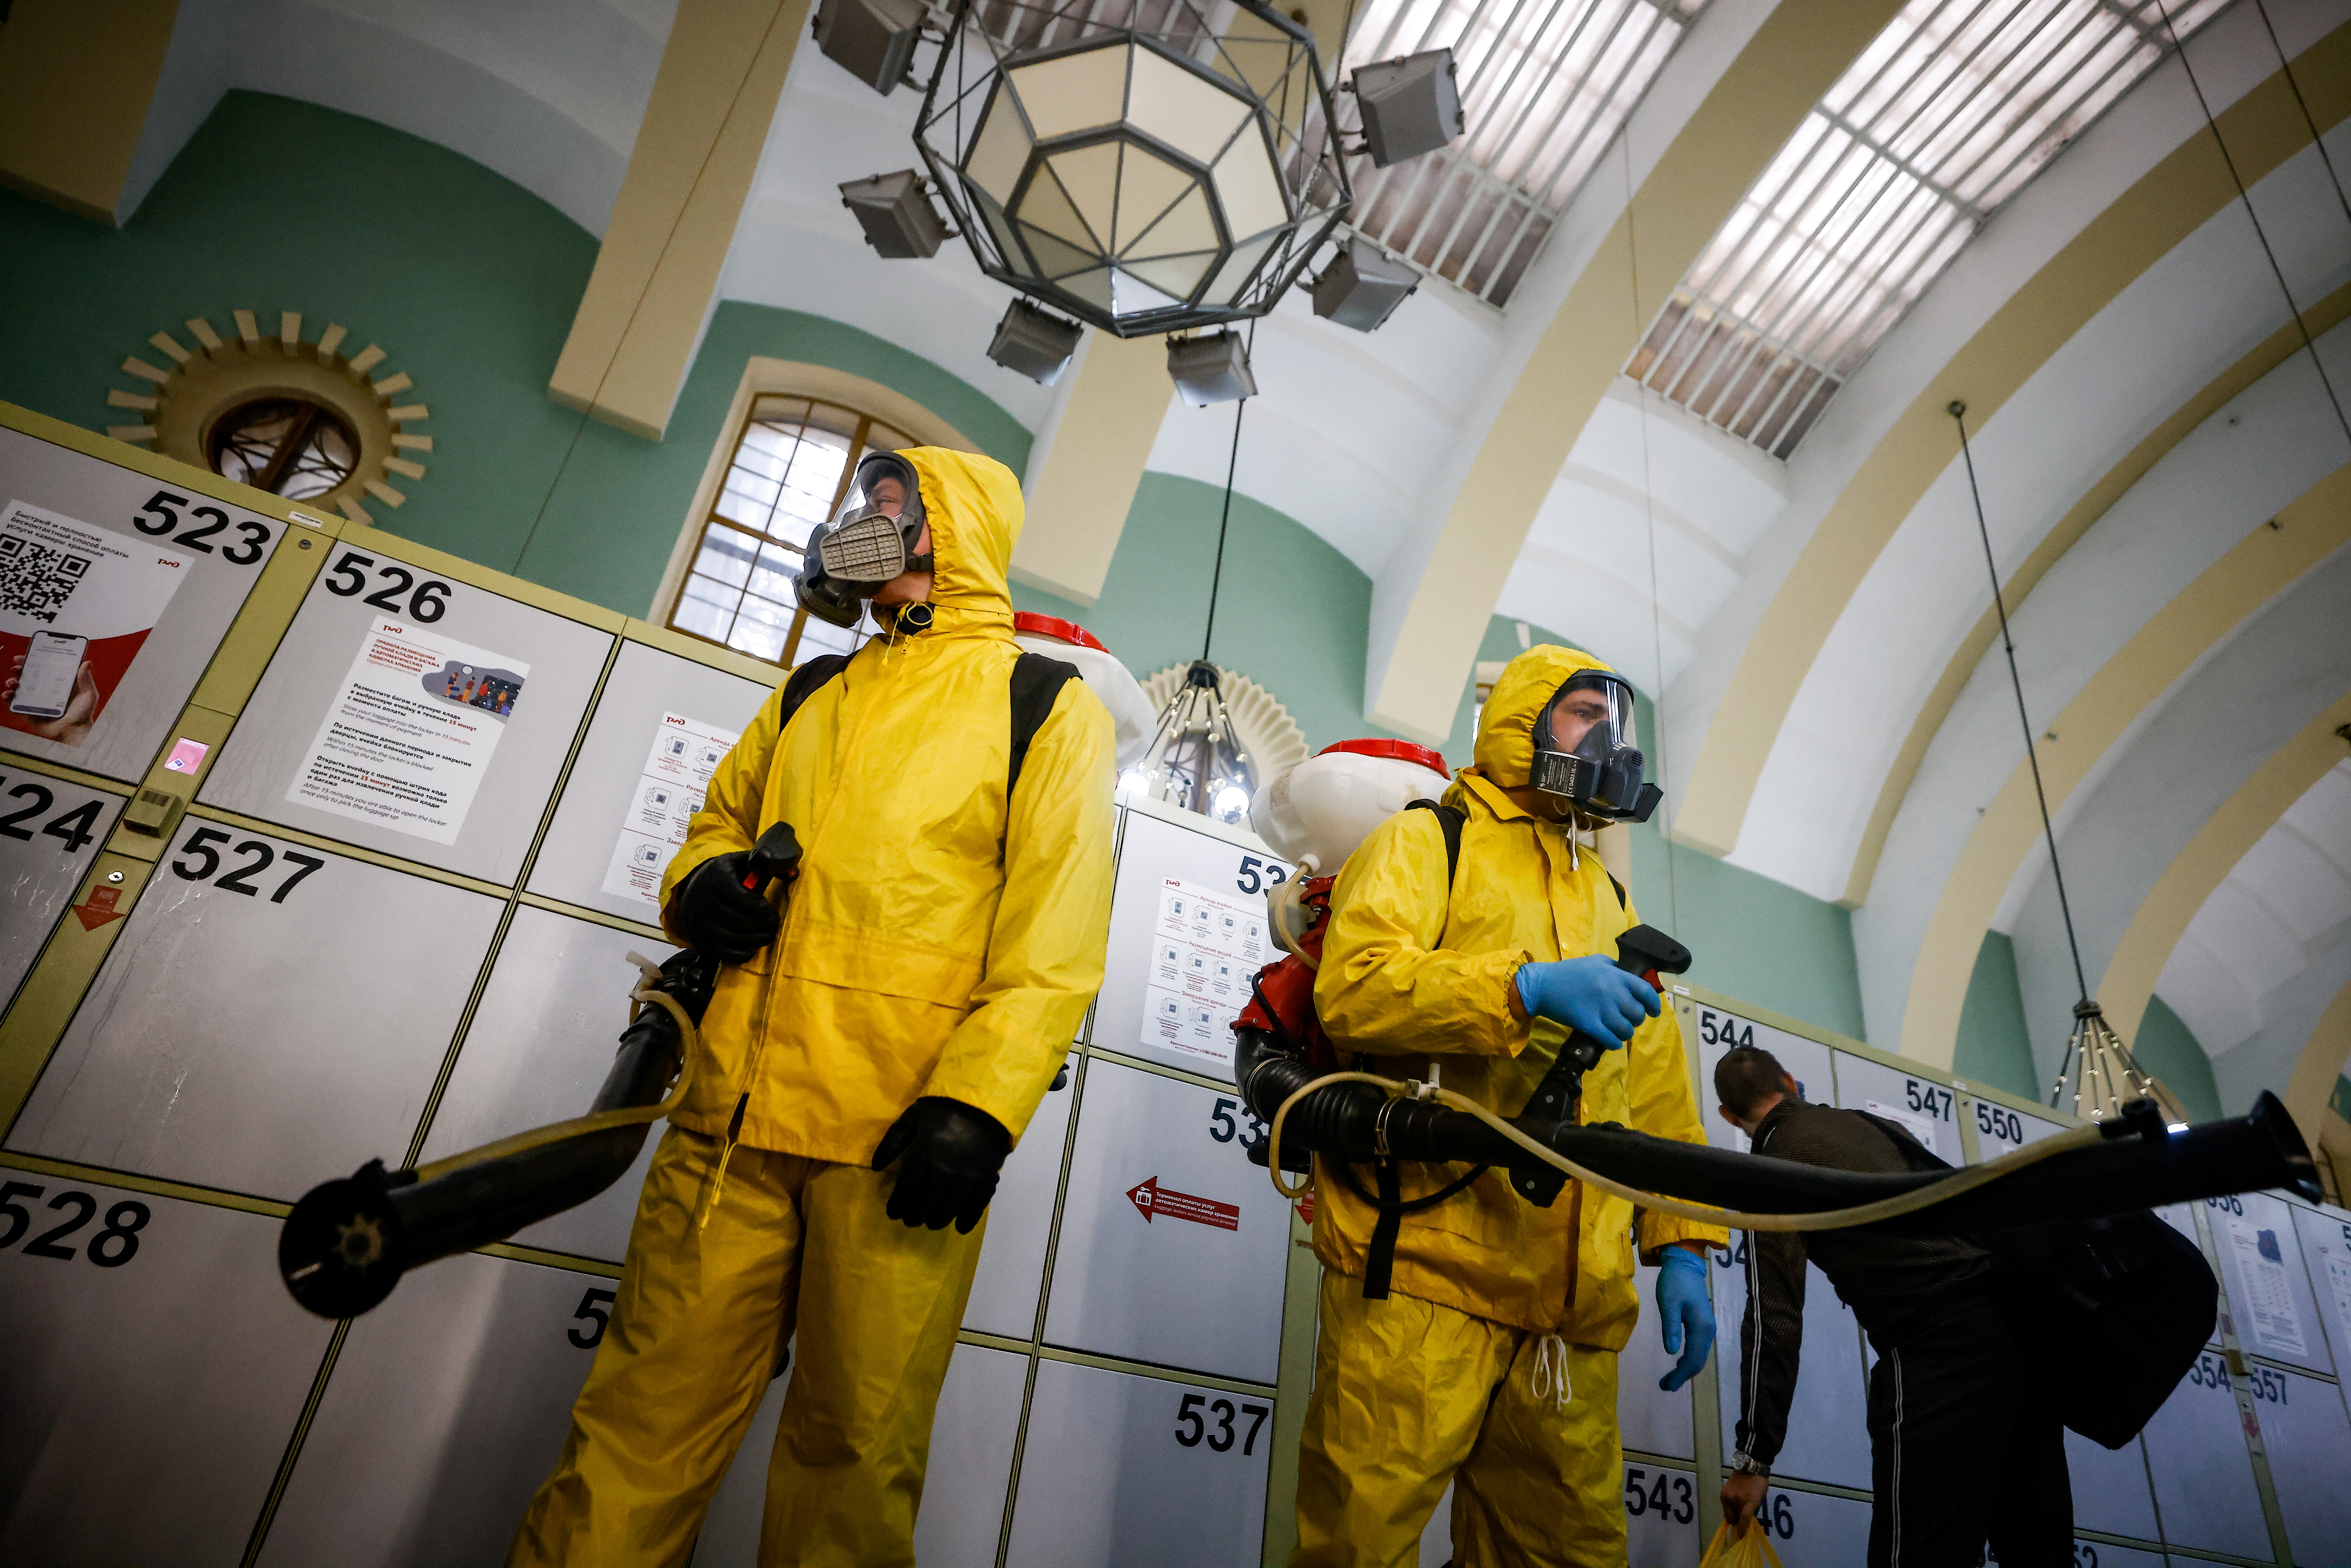 Մասնագետները, ովքեր կրում են անհատական ​​պաշտպանիչ սարքավորումներ (PPE) ախտահանում են Կազանսկի երկաթուղային կայարանը ախտահանելիս՝ 19 թվականի նոյեմբերի 2-ին Մոսկվայում, Ռուսաստանում, կորոնավիրուսային հիվանդության (COVID-2021) բռնկման պայմաններում: REUTERS/Մաքսիմ Շեմետով